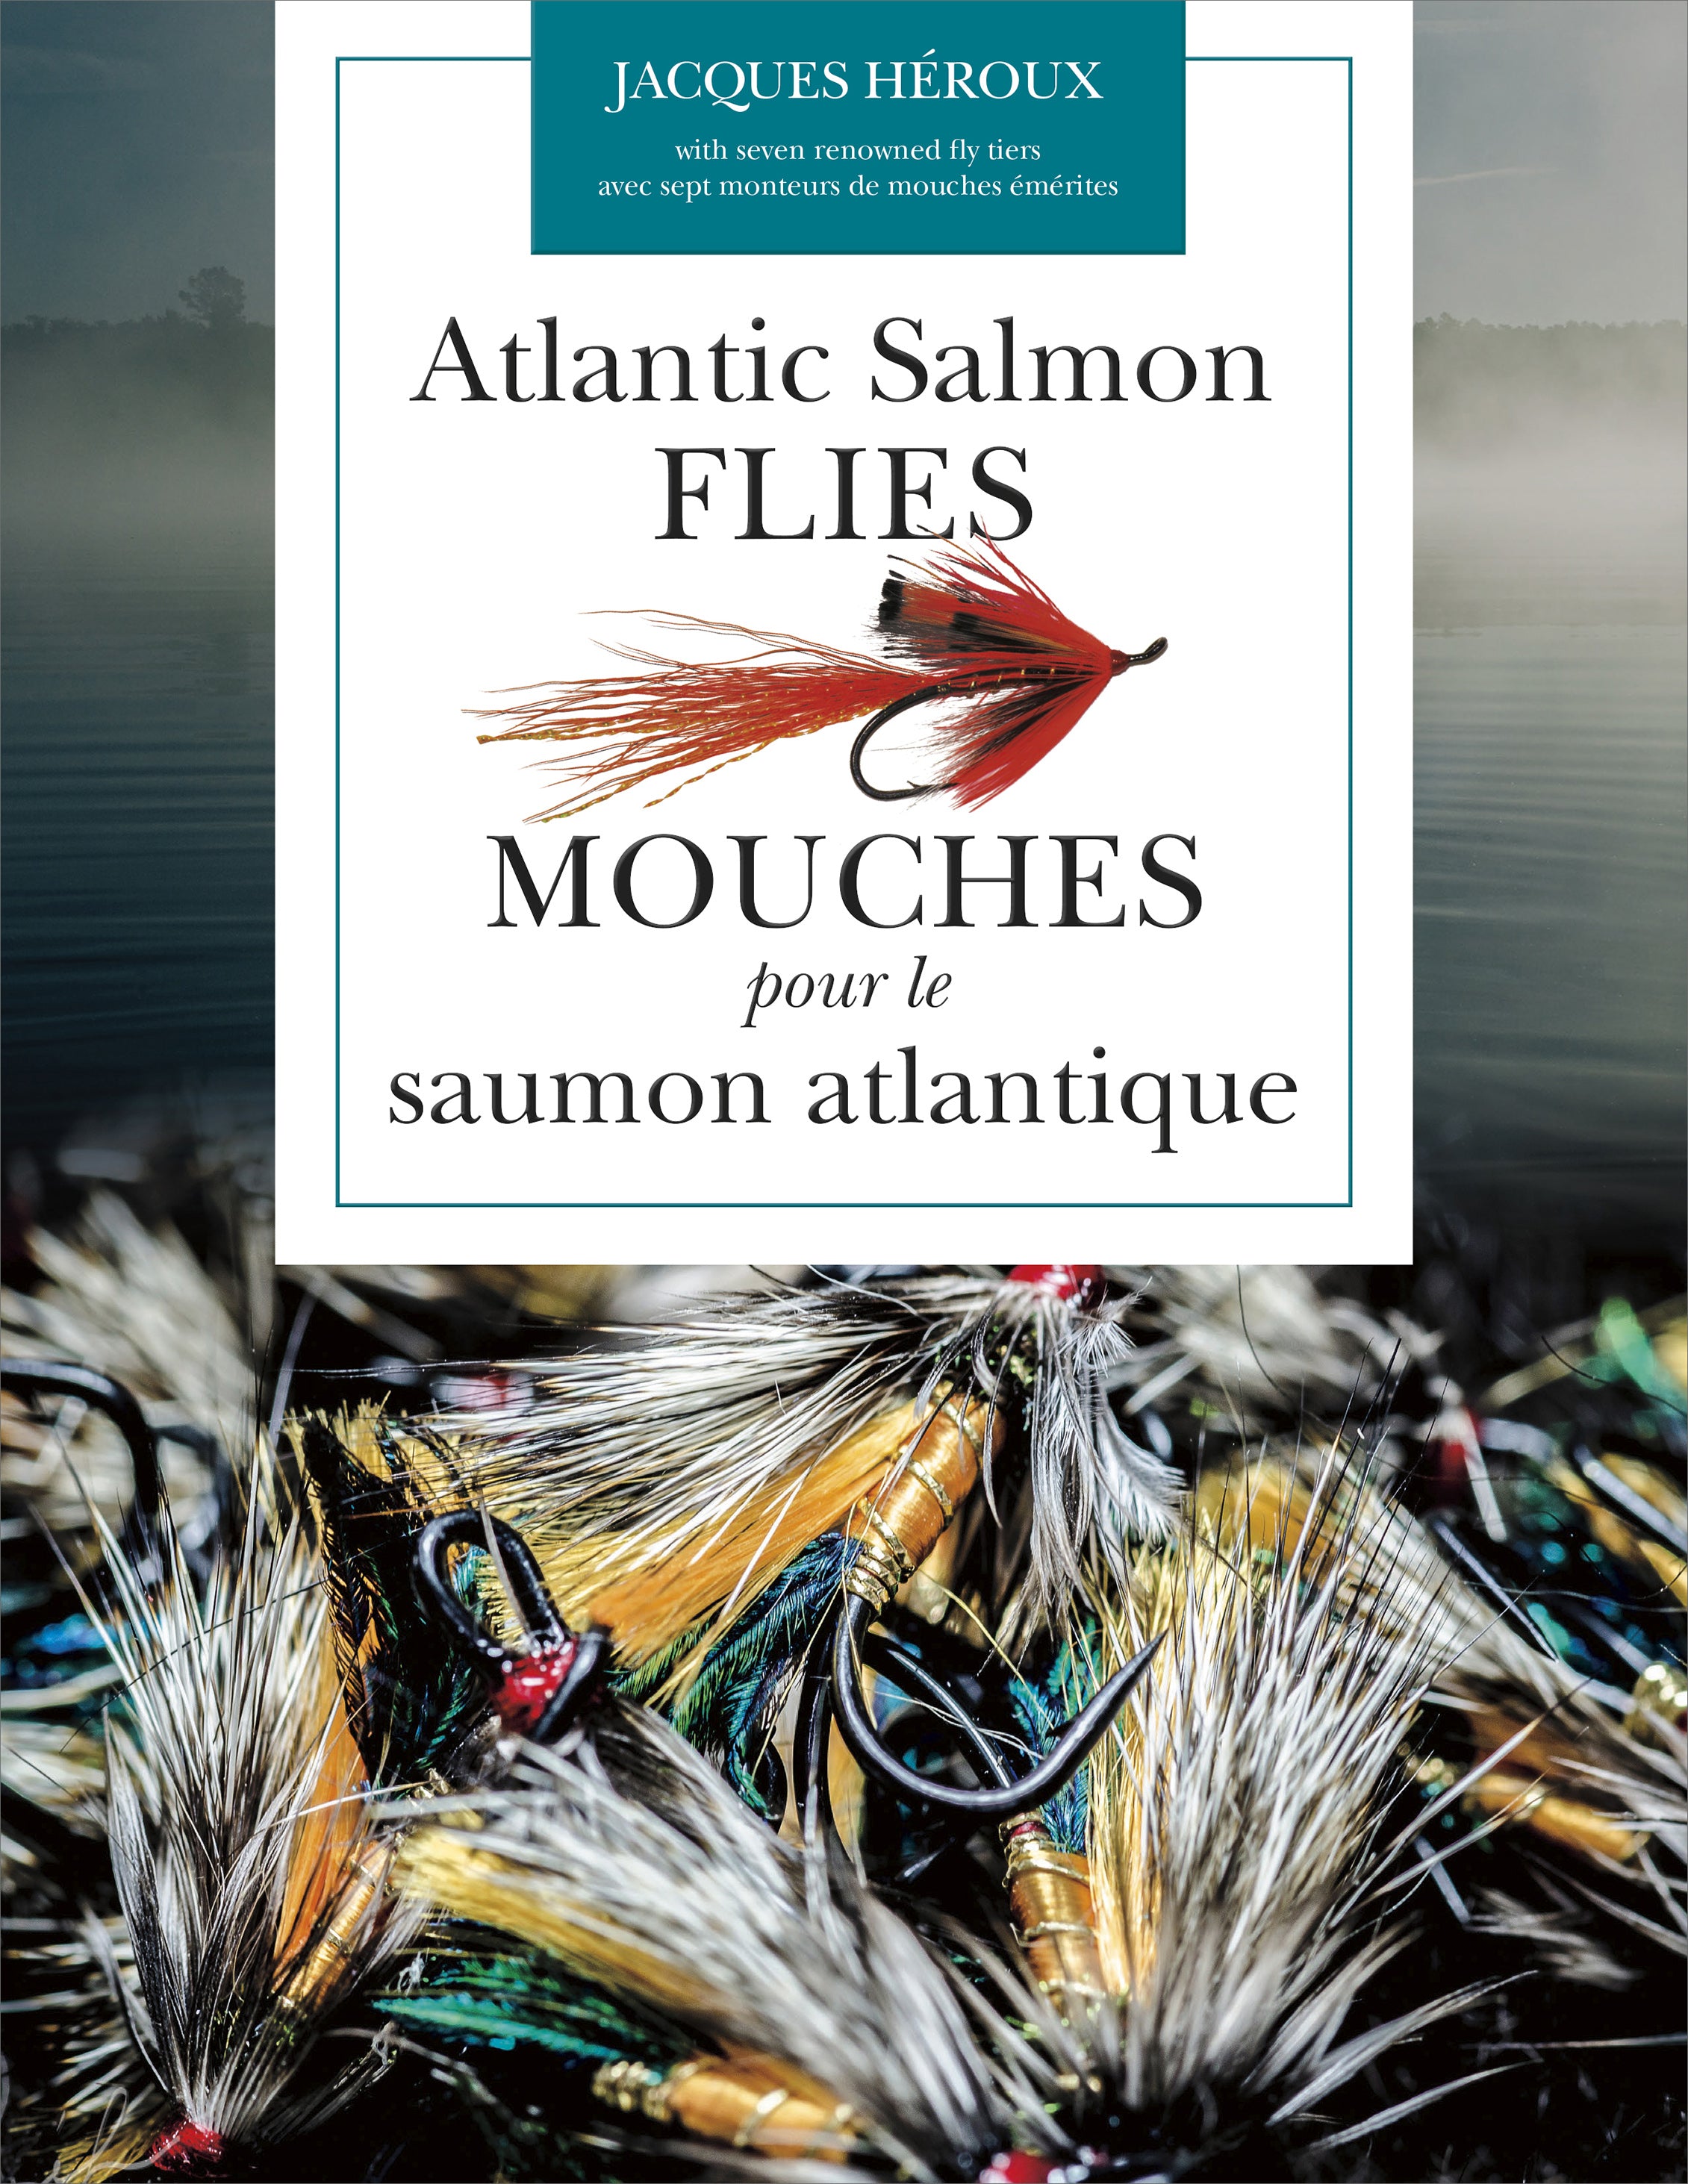 Atlantic Salmon Flies / Mouches pour le saumon atlantique (English